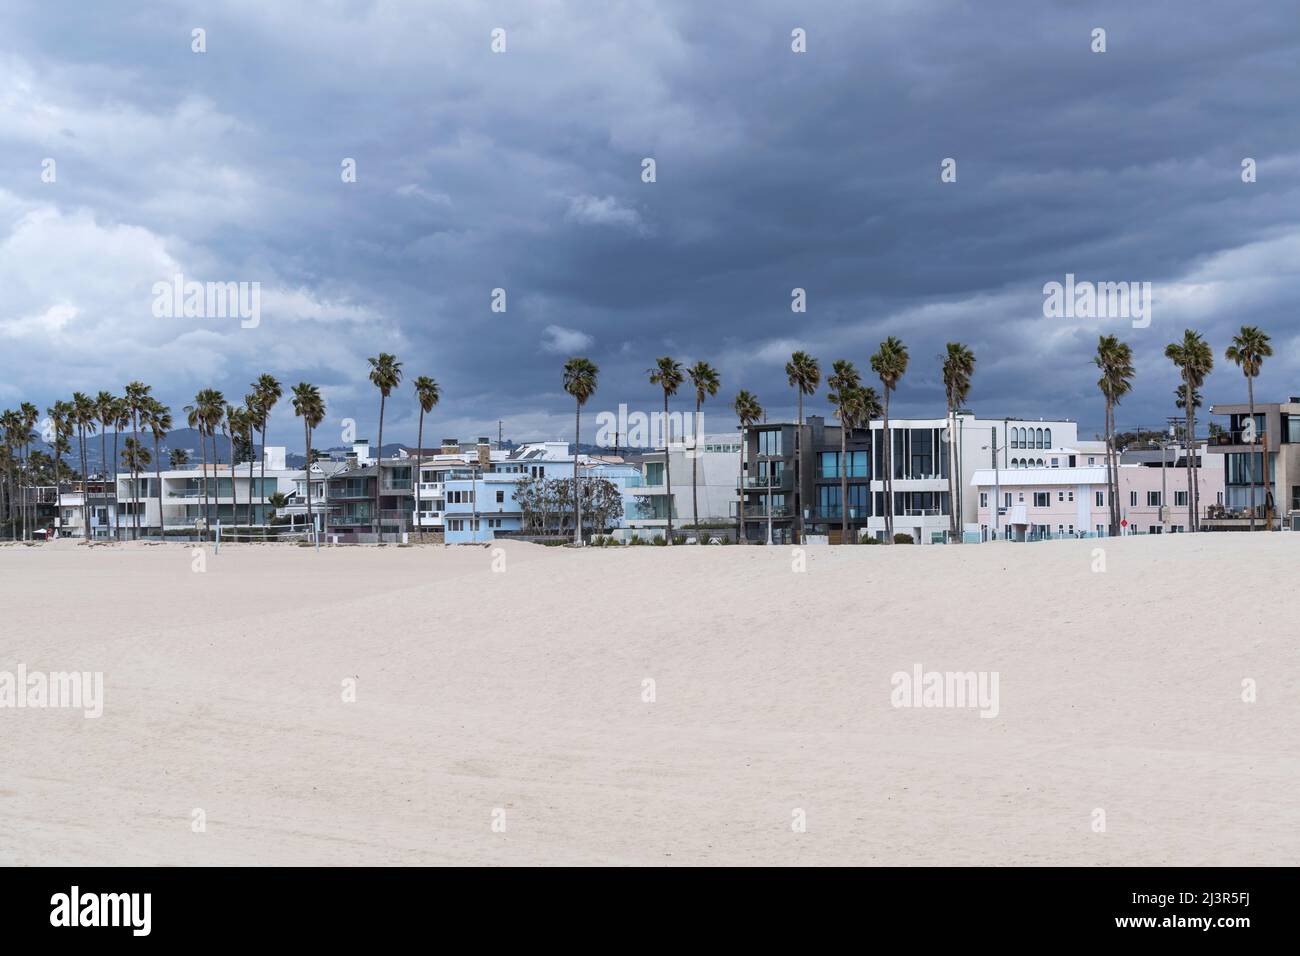 Nubes de tormenta reuniéndose sobre casas y palmeras en la popular playa de Venecia en Los Angeles, California. Foto de stock